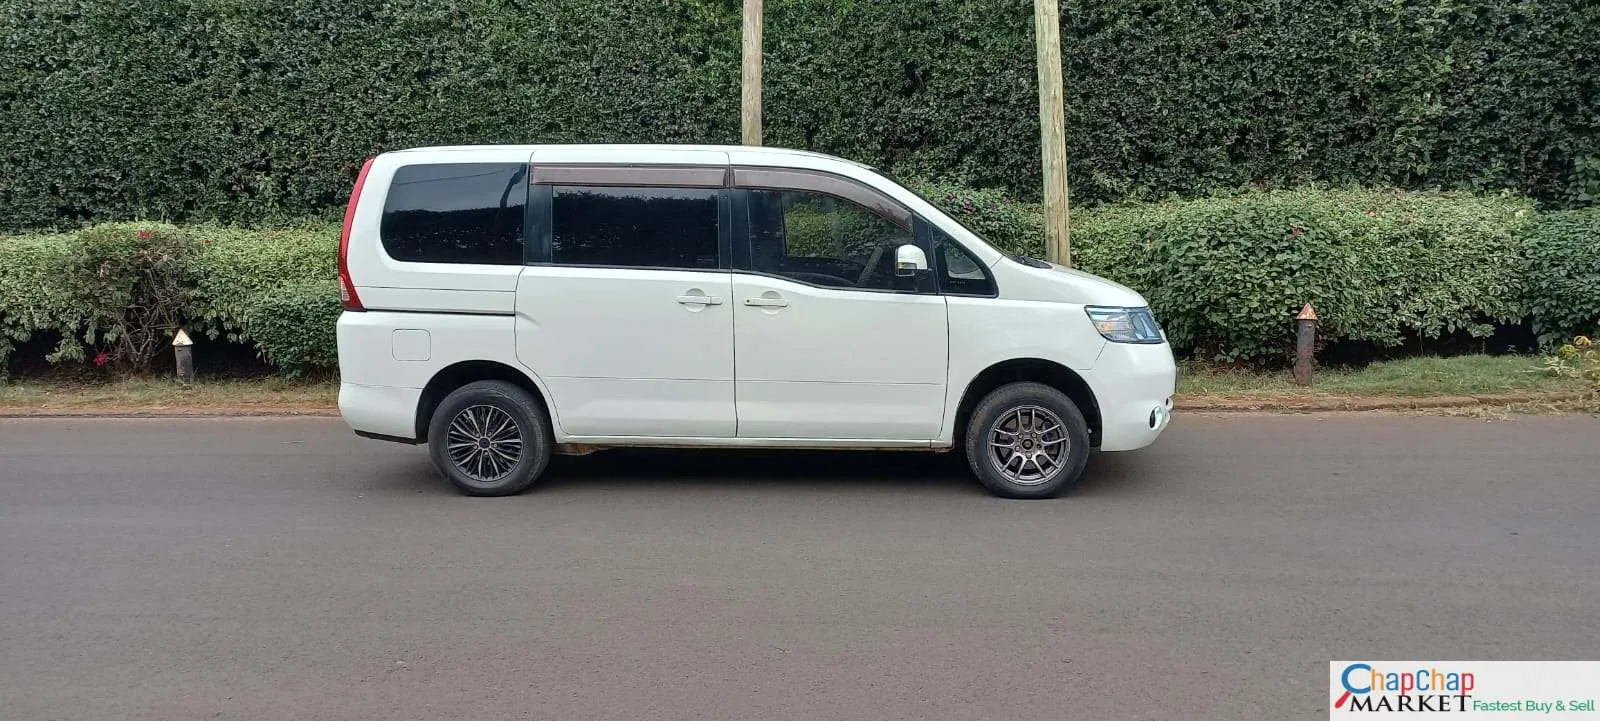 Nissan Serena Van for sale in Kenya You Pay 30% Deposit Trade in Ok EXCLUSIVE!